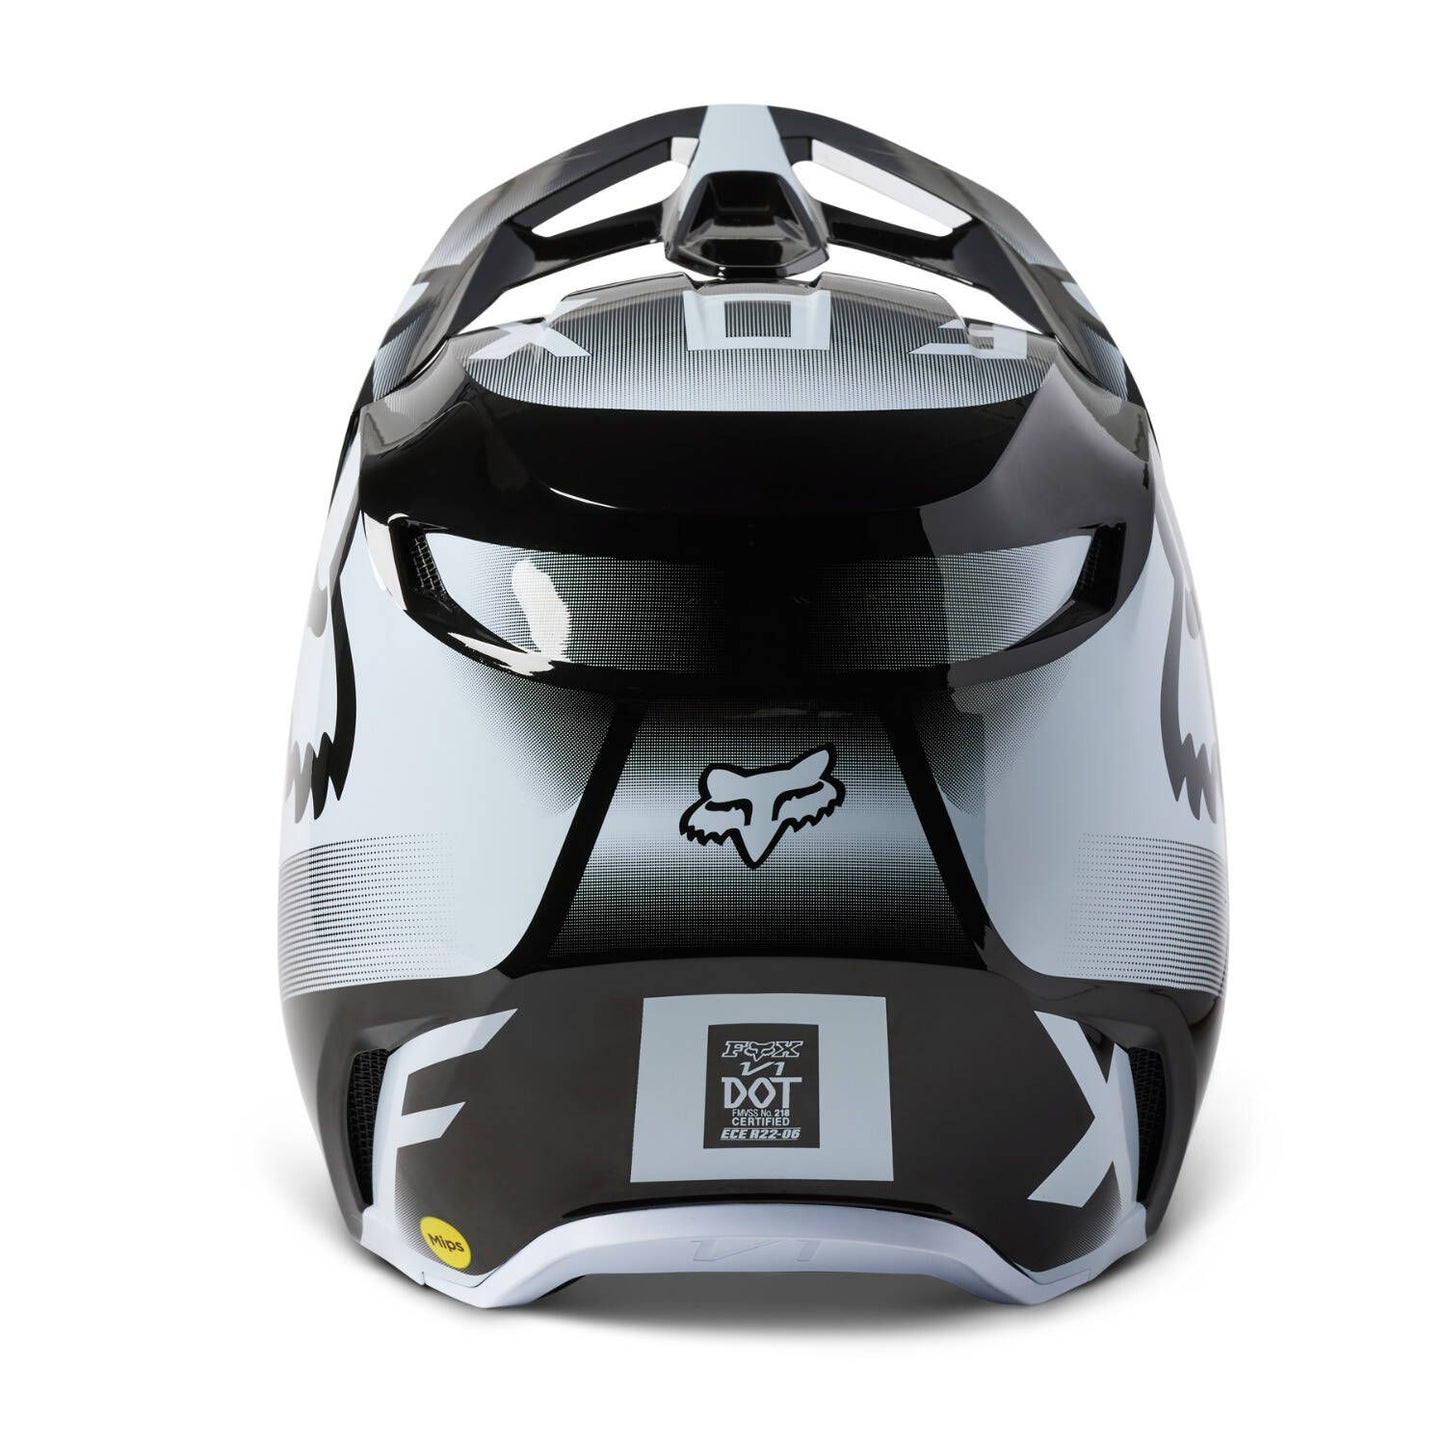 Fox V1 Leed MX Helmet - Black/White